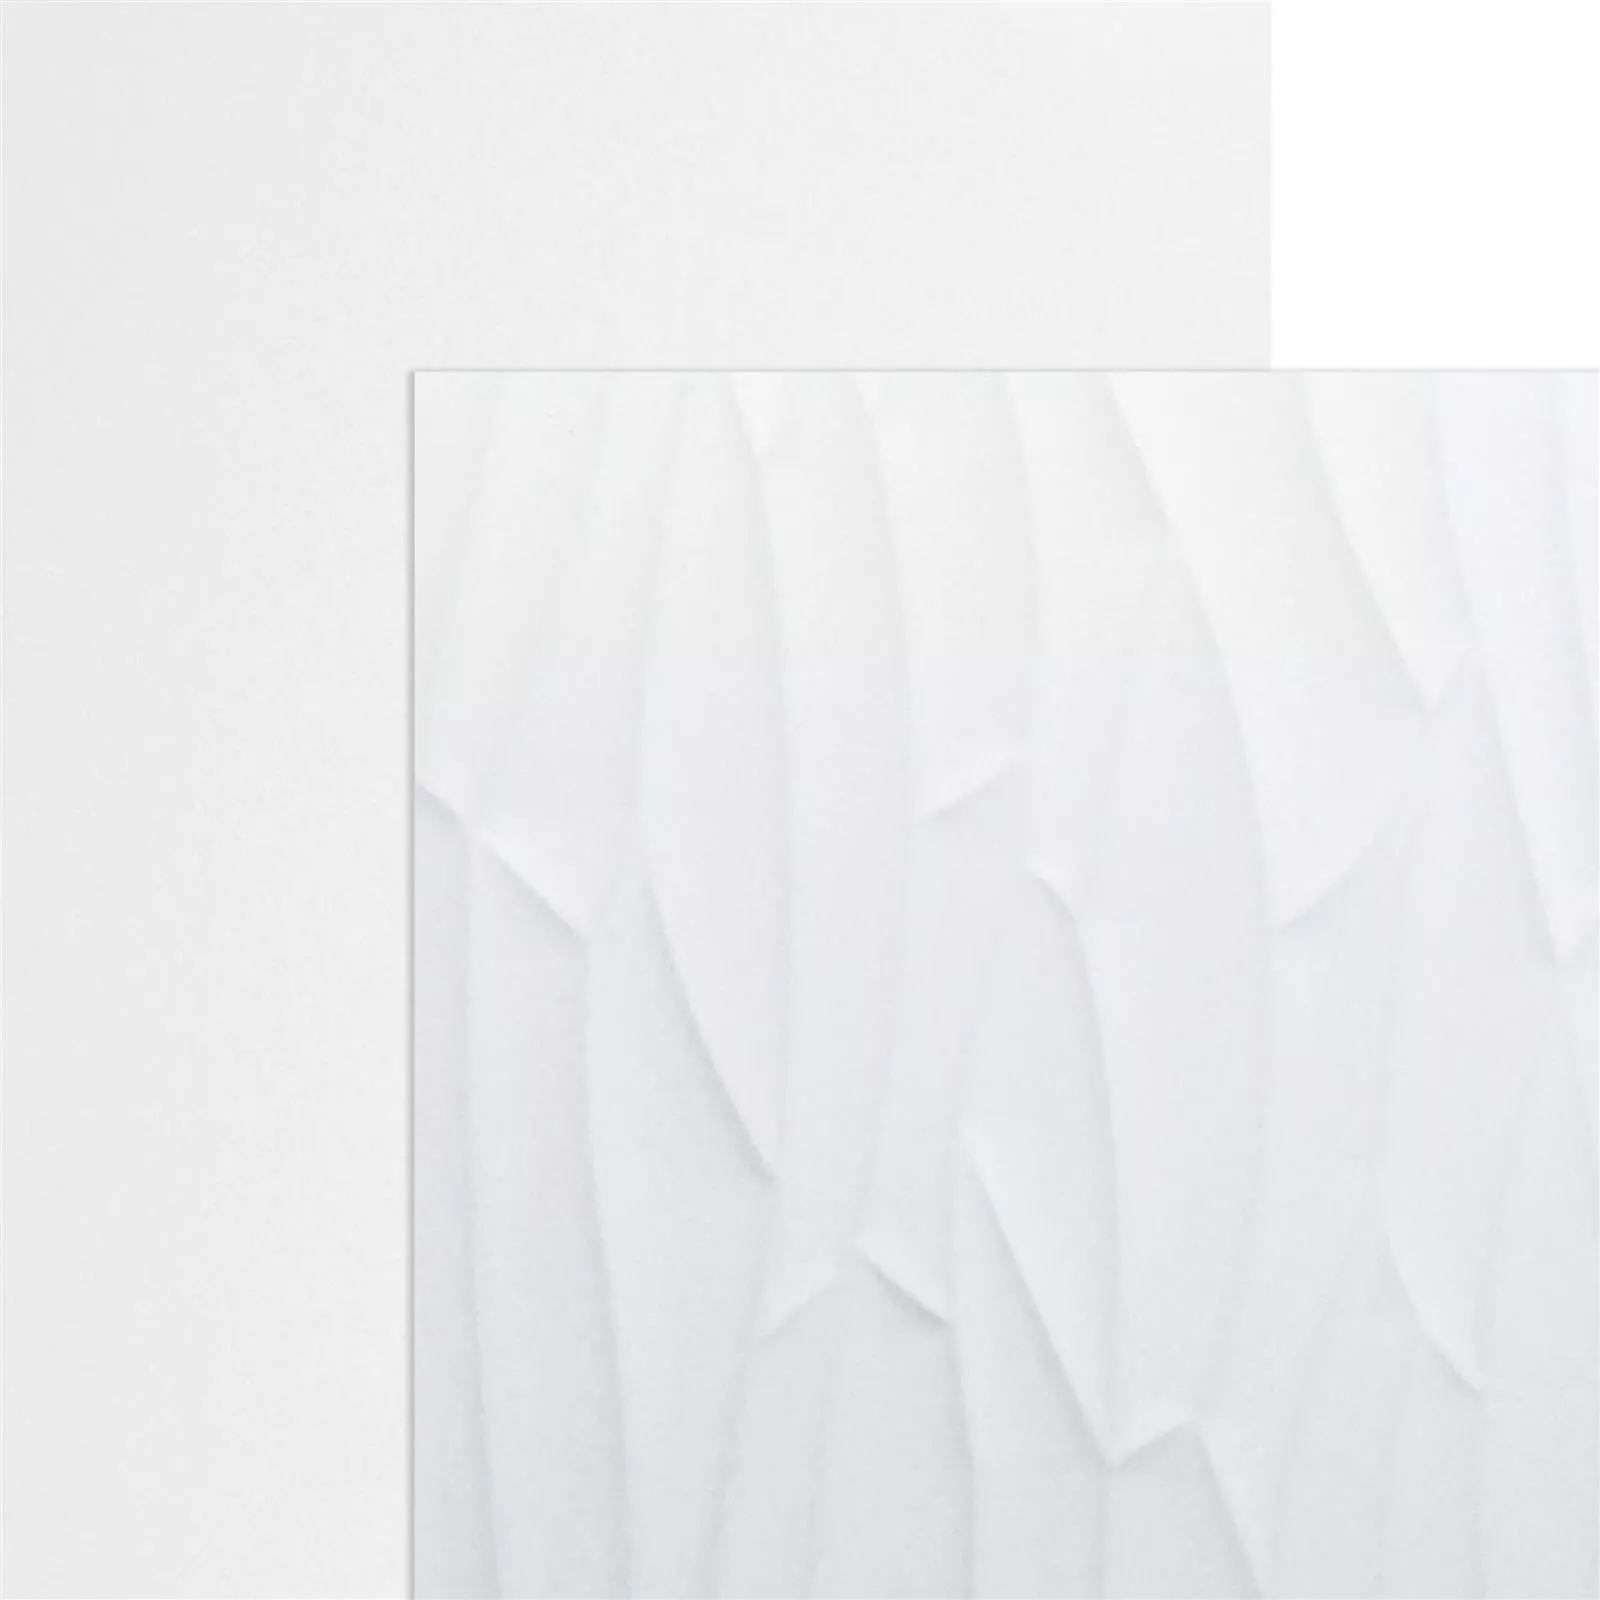 Próbka Płytki Ścienne Schönberg Rektyfikowany Biały Matowy 40x120cm